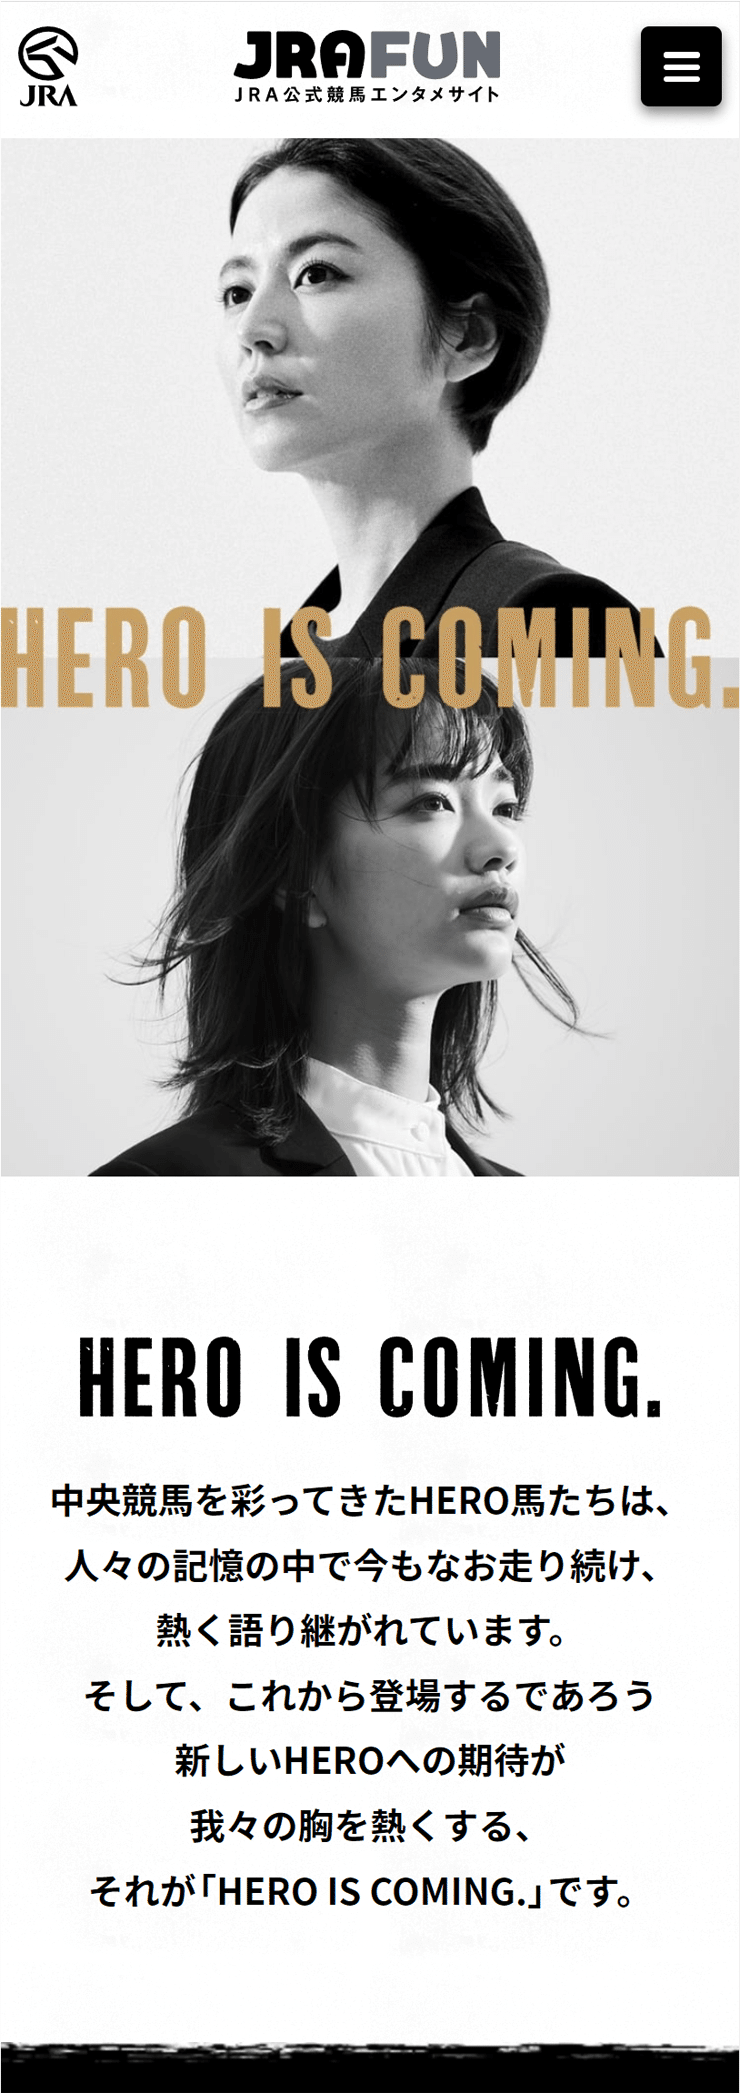 JRA2022年度プロモーション「HERO IS COMING.」の画像